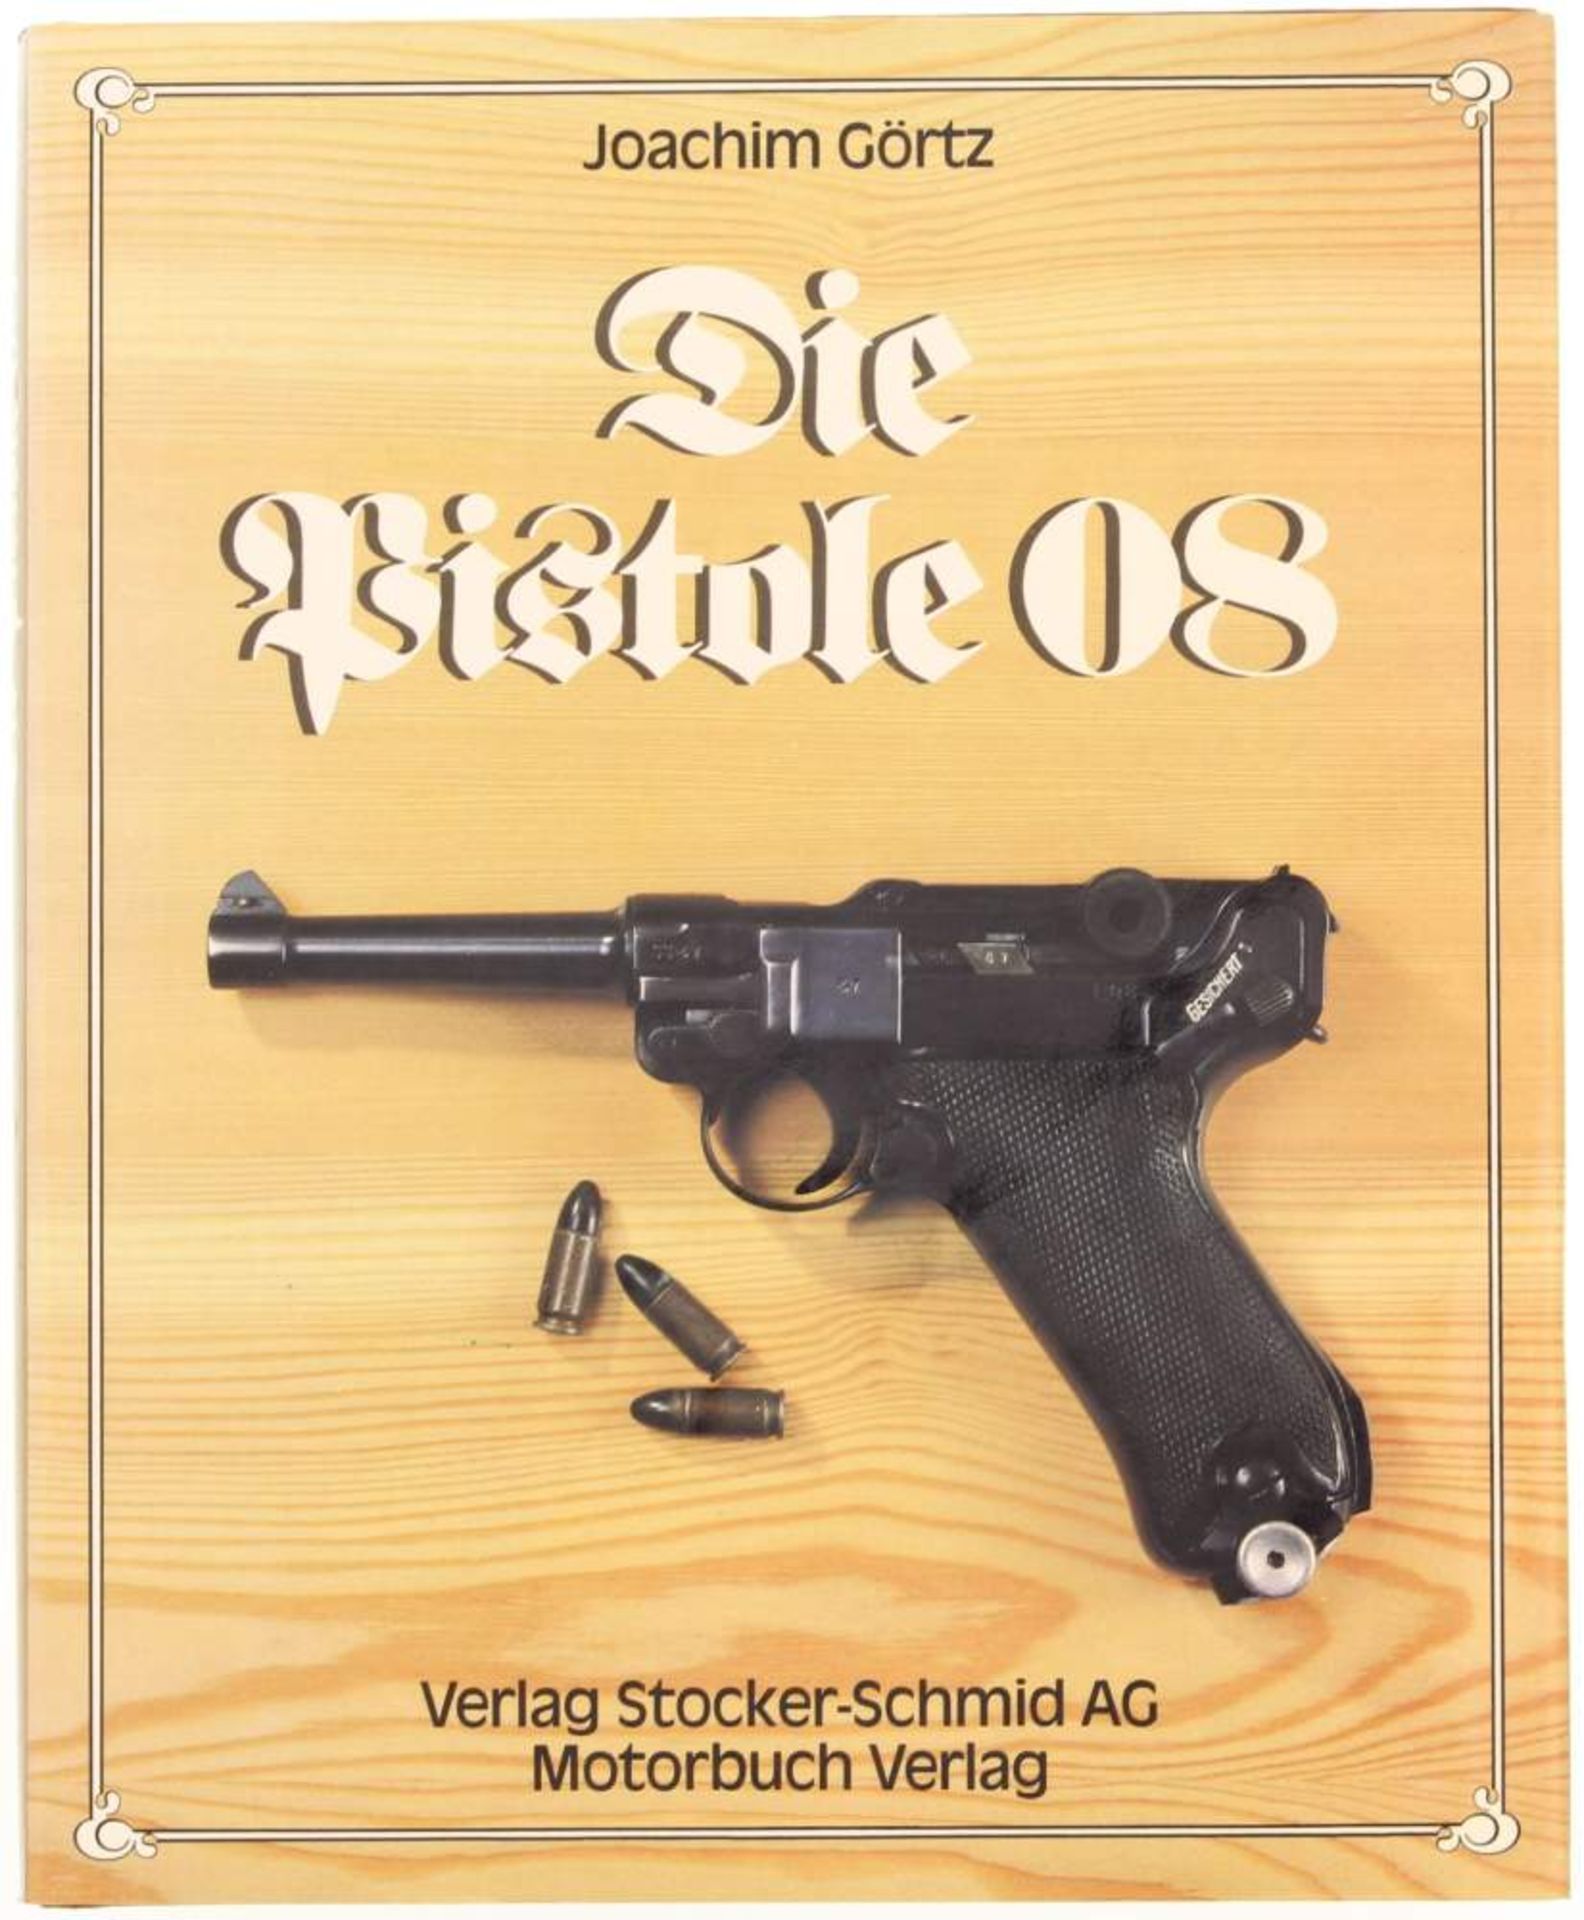 Die Pistole 08, von Joachim Görtz, Verlag Stocker-Schmid AG. Die spannende Geschichte der Pistole 08